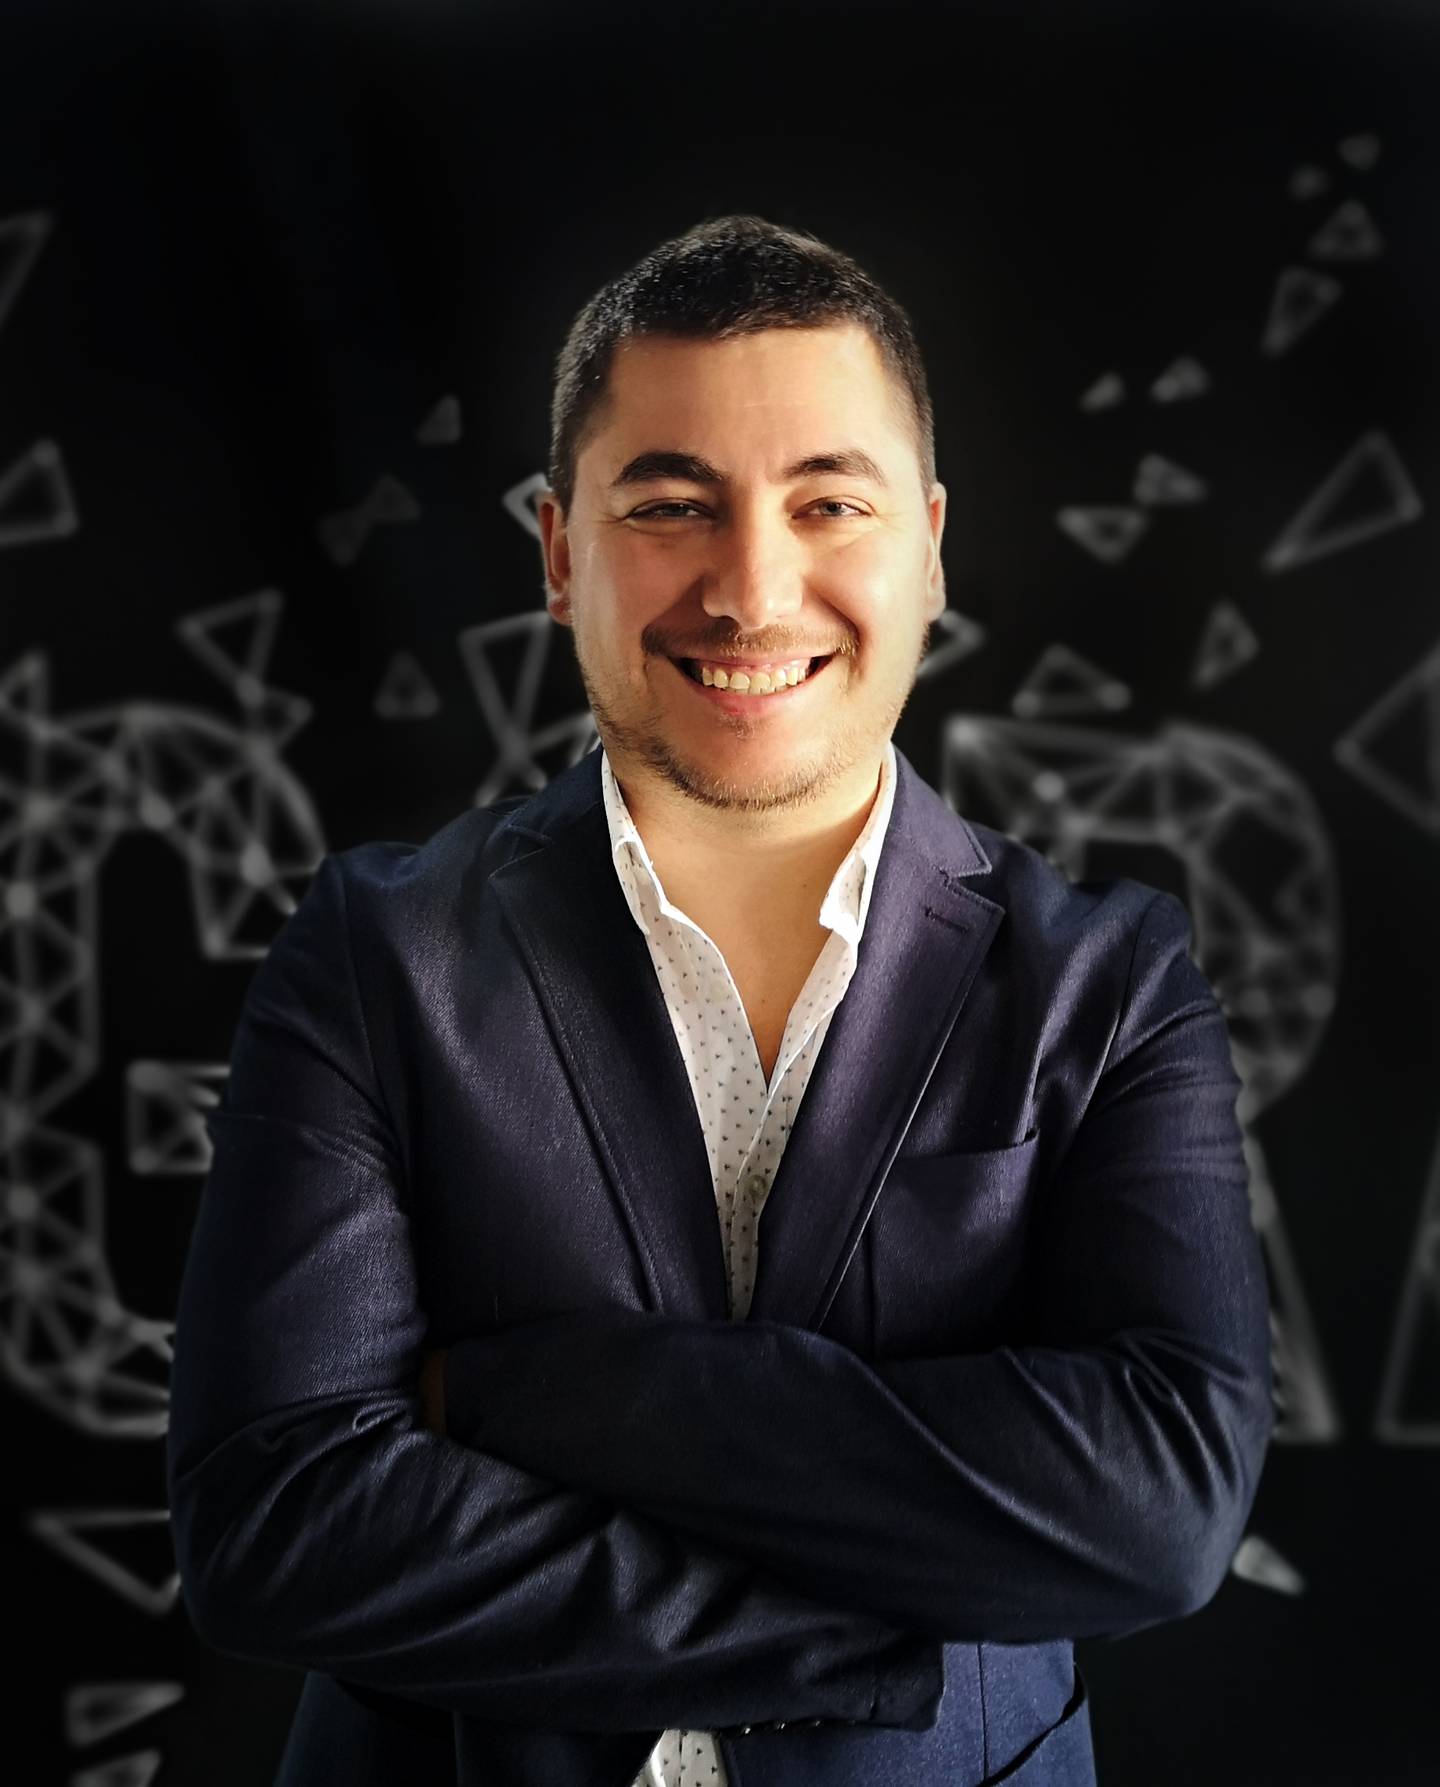 Claudio Barahona, fundador y CEO de CómoLevantarCapitaldfd